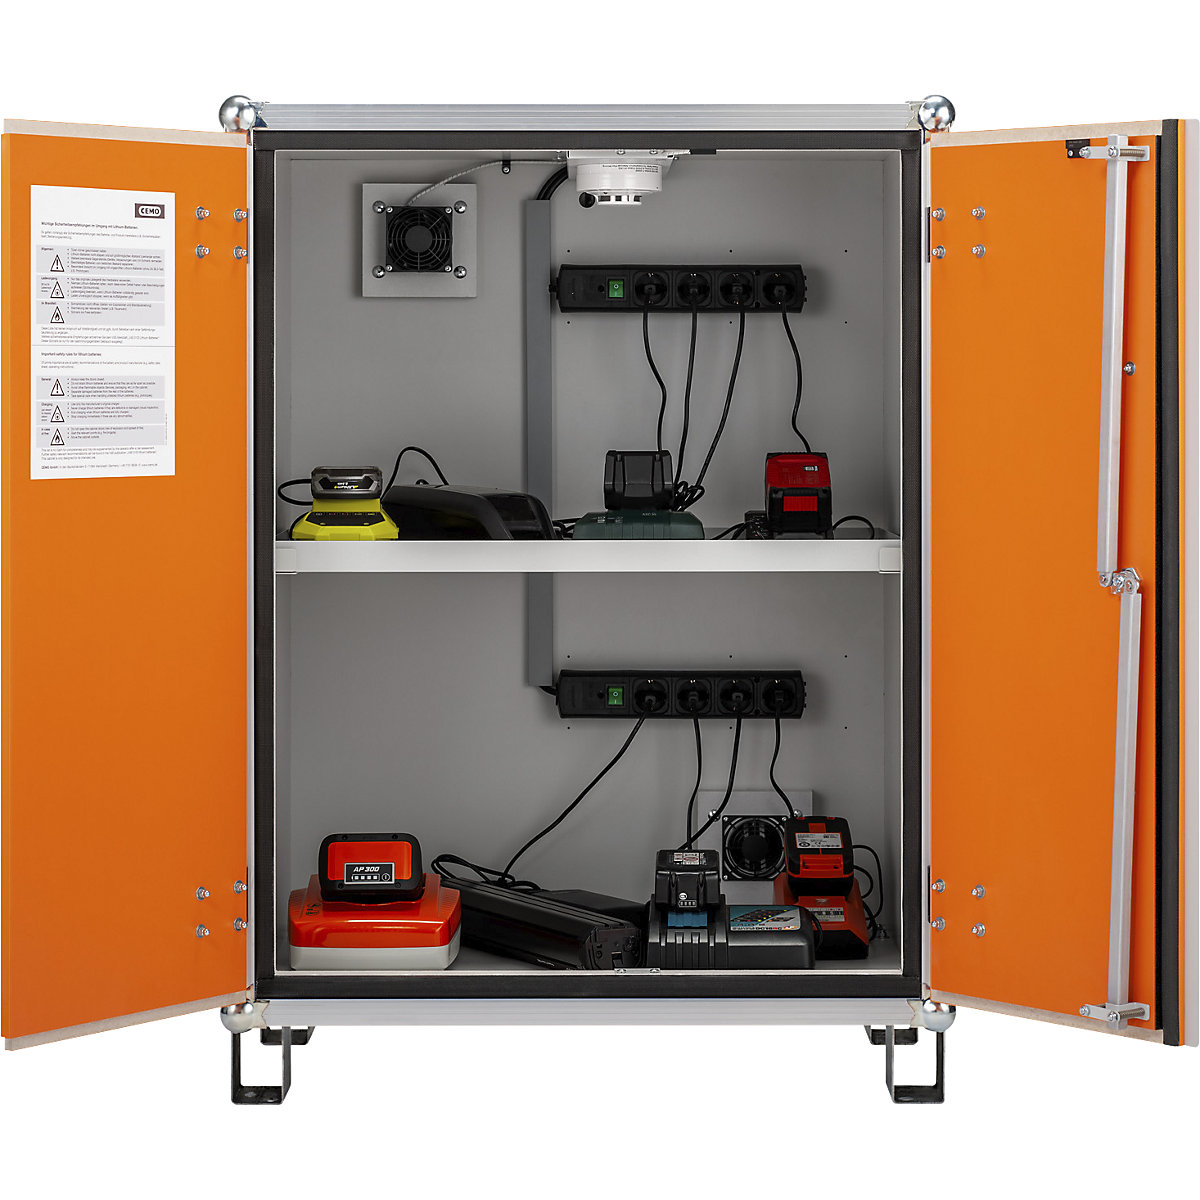 Armário de segurança para carregar baterias PREMIUM – CEMO (Imagem do produto 6)-5